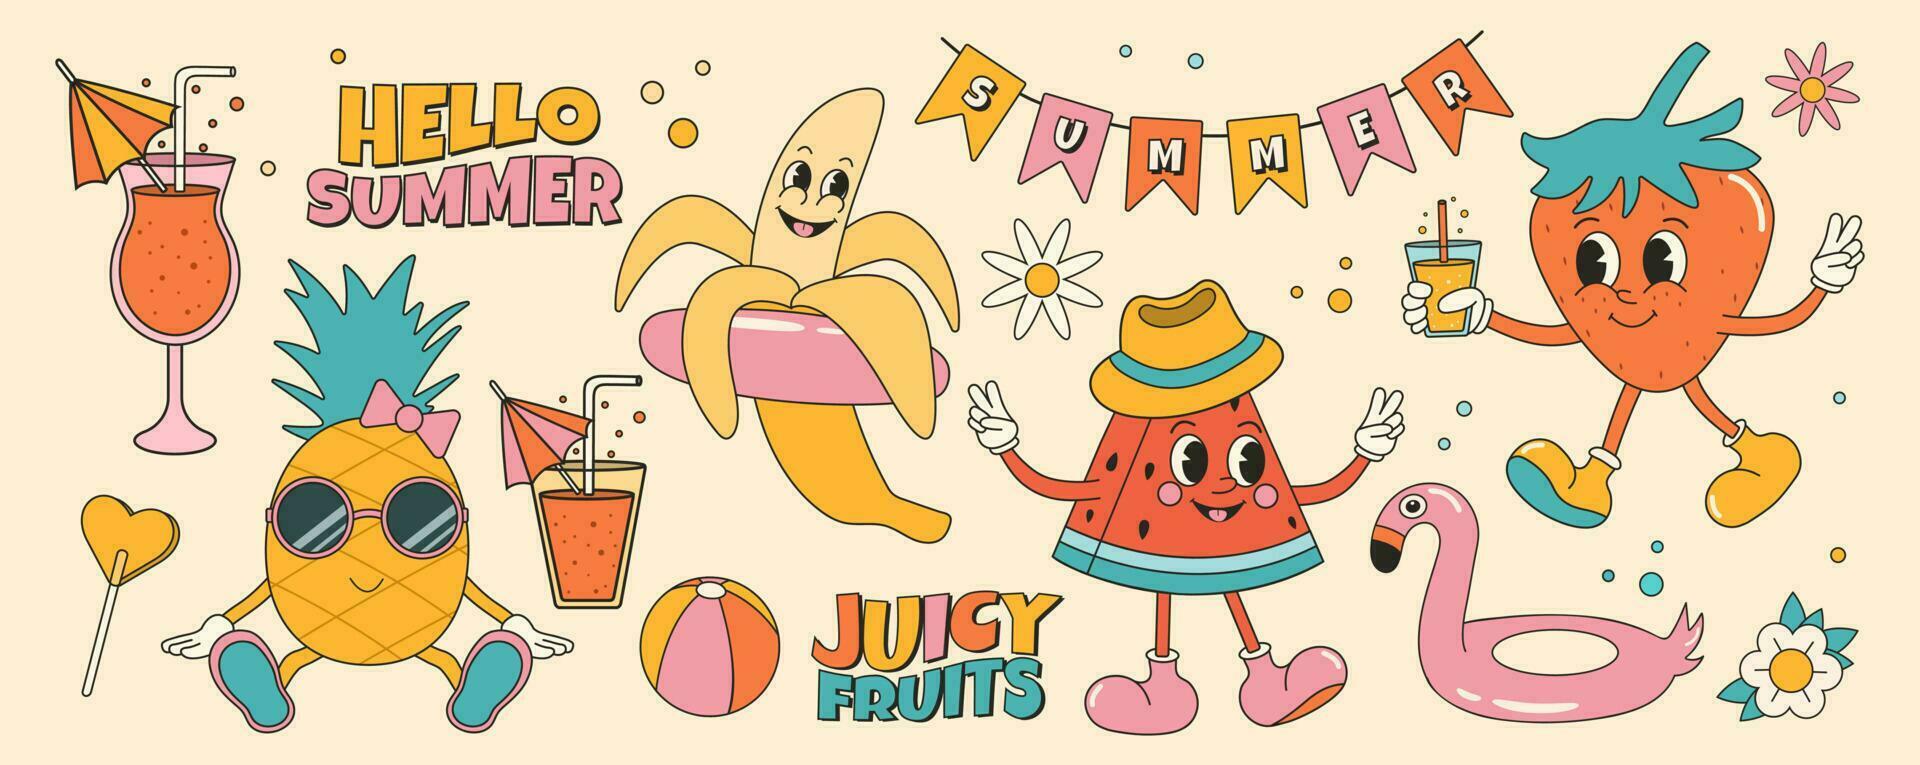 groovy zomer sticker reeks met zomer fruit en elementen. aardbei, watermeloen, ananas, banaan. tekenfilm tekens in modieus retro stijl, grappig mascotte karakters. vector